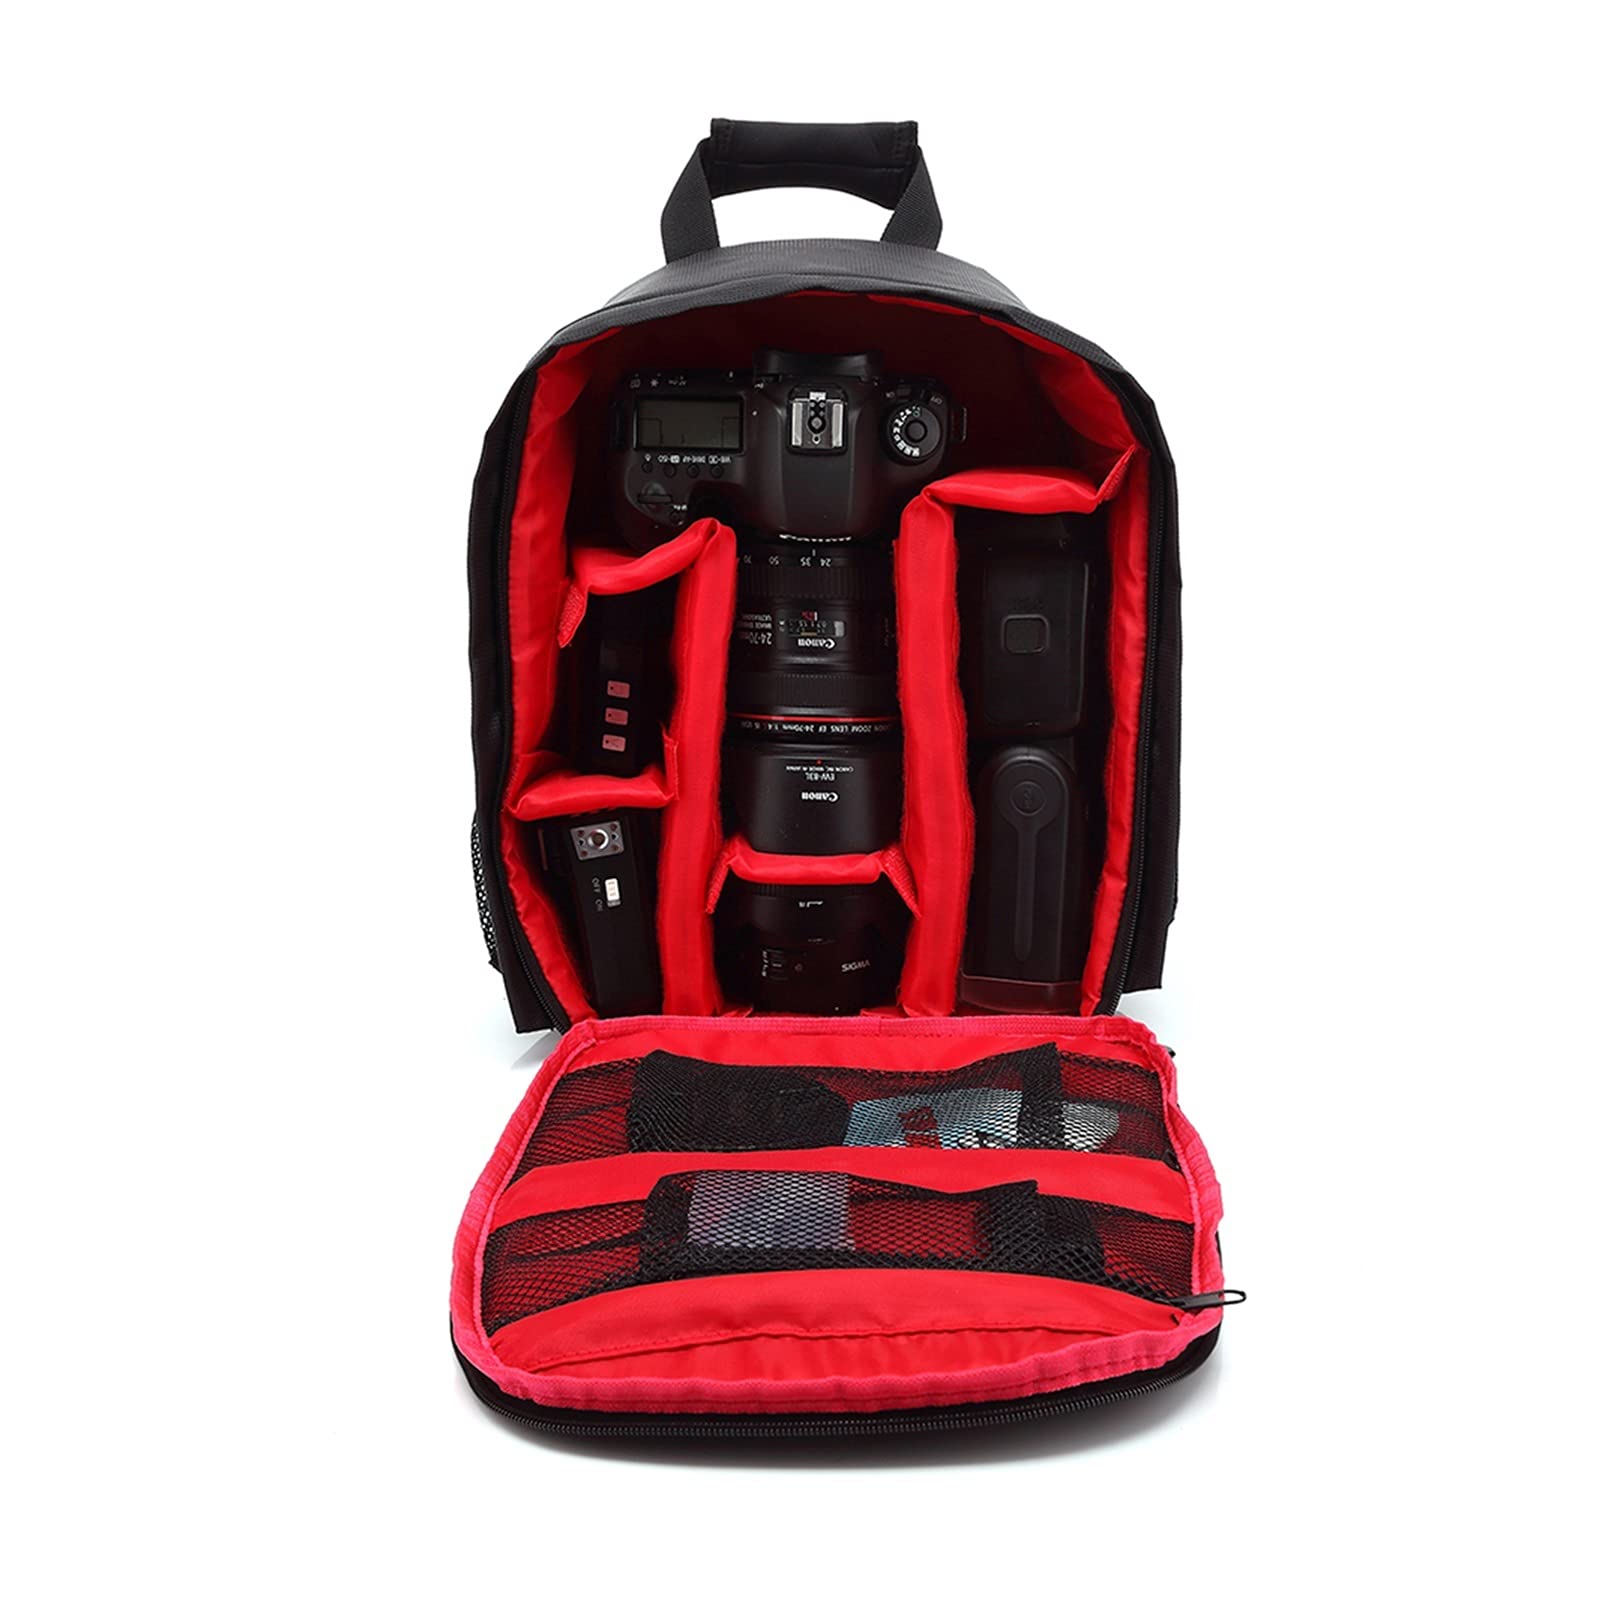 送料無料WCNMB Camera Bag Camera Bag Digital DSLR Bag Waterproof Shockproof Breathable Camera Backpack Fashionable and Con